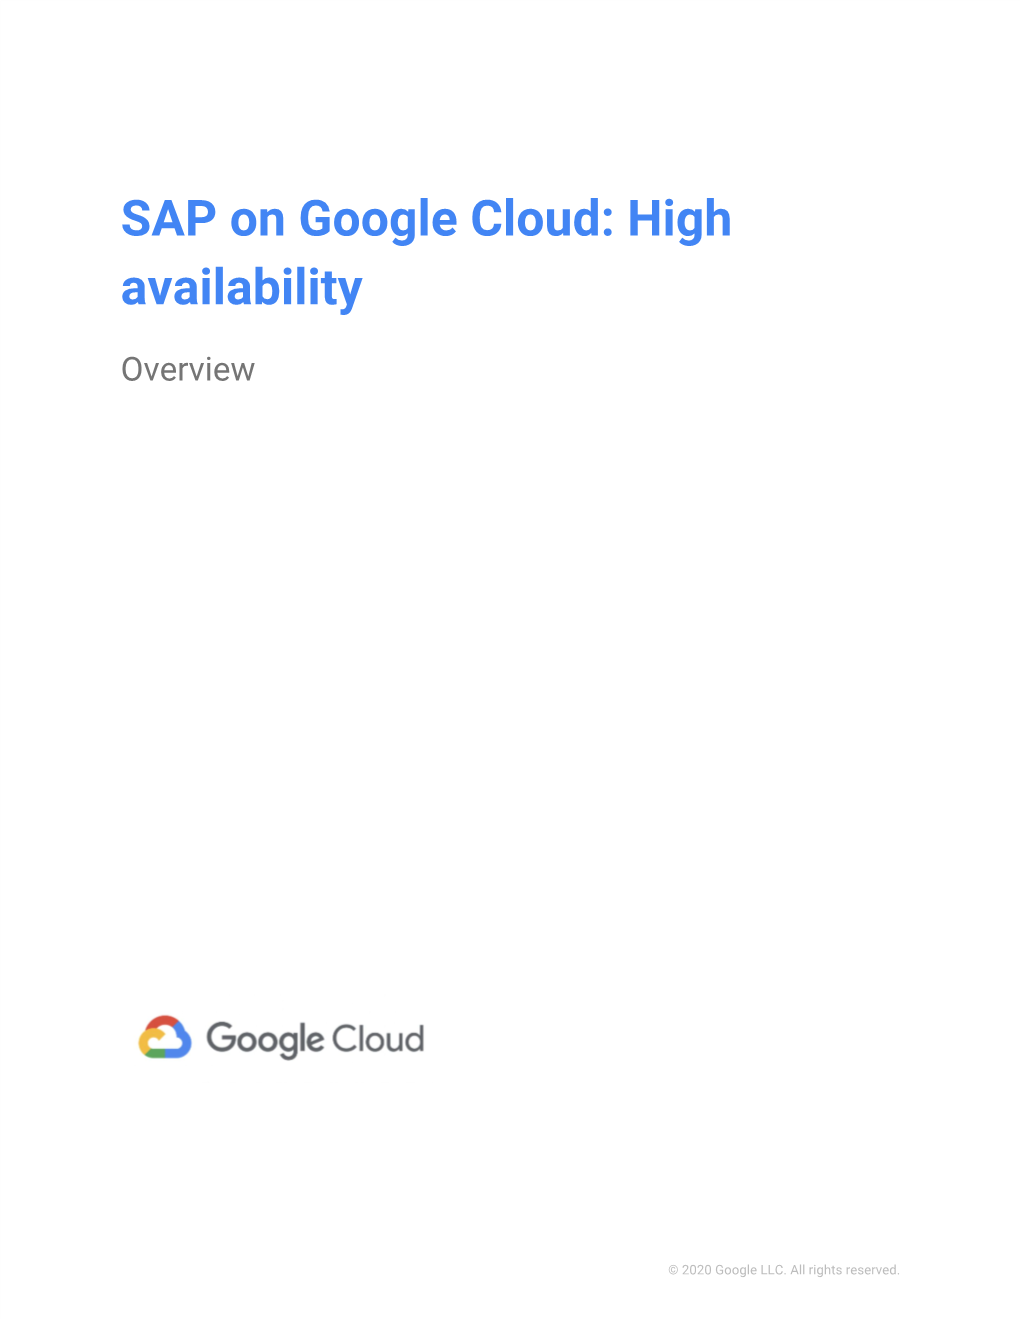 SAP on Google Cloud: High Availability